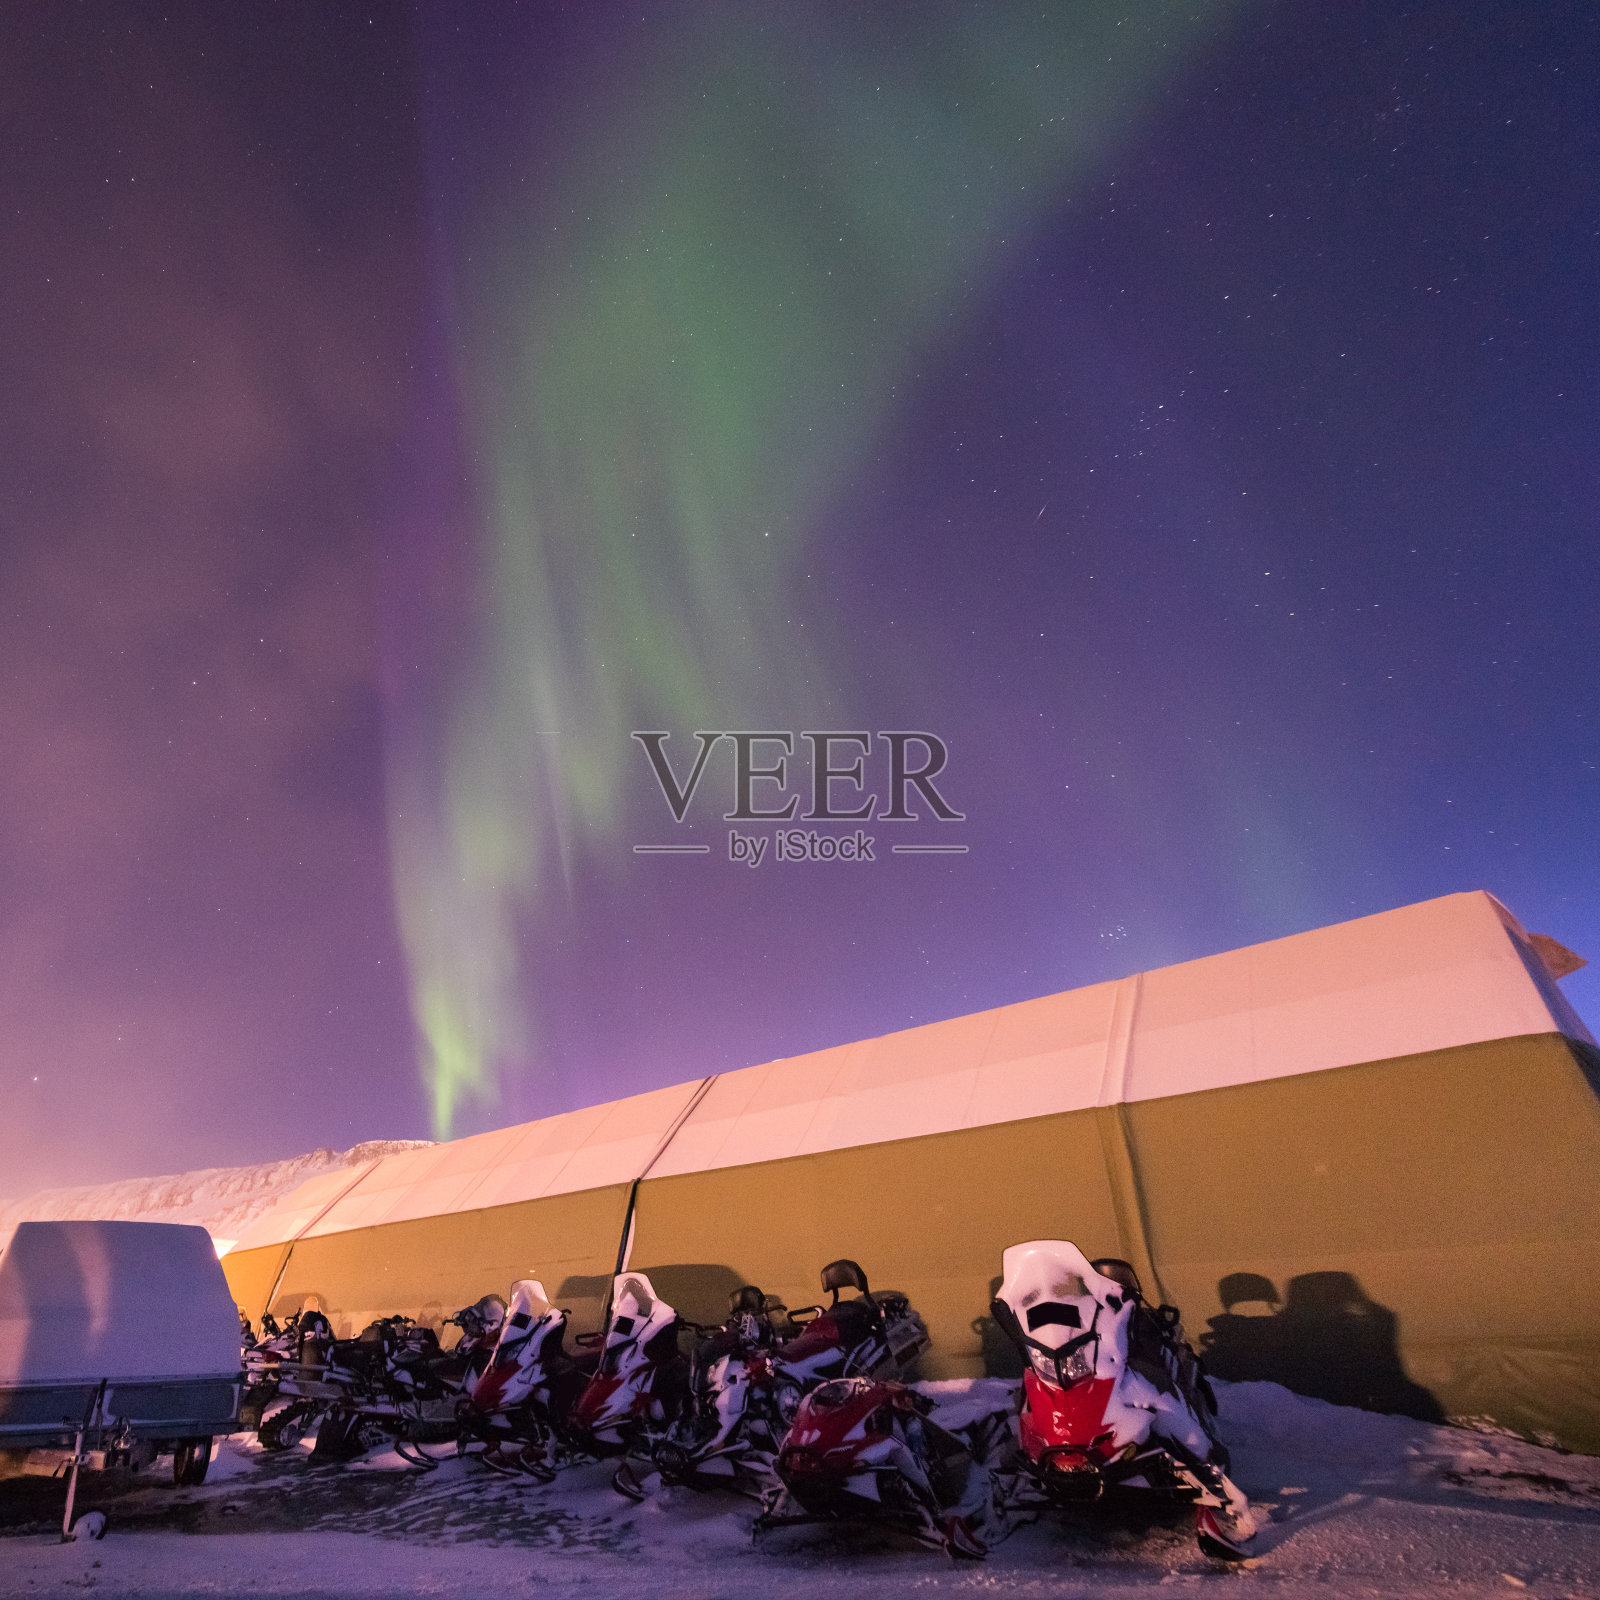 北极光北极光是挪威斯瓦尔巴特群岛的天星在朗伊尔城山脉照片摄影图片